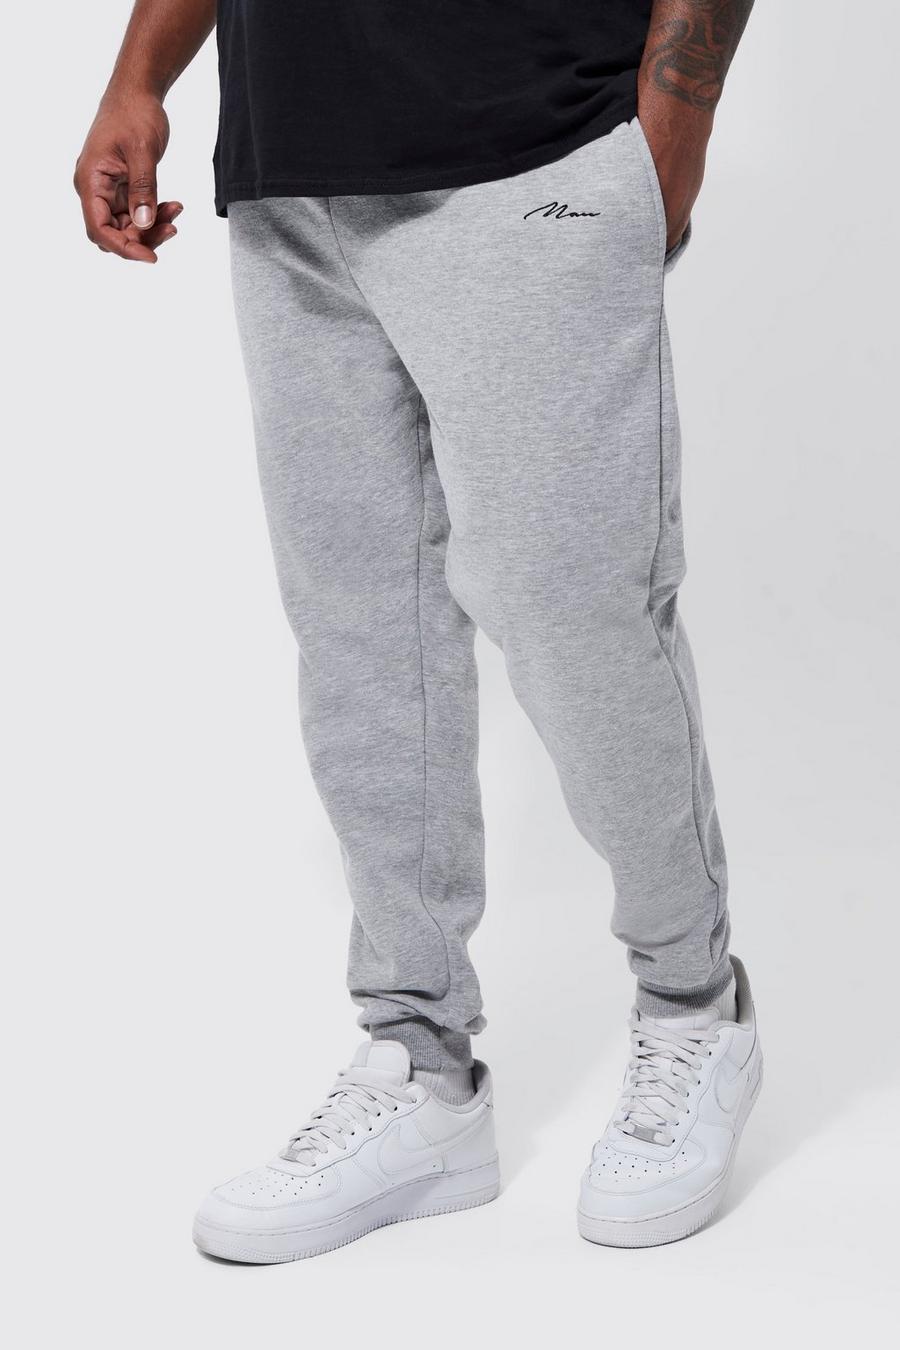 Pantalón deportivo Plus MAN pitillo con algodón ecológico, Grey marl grigio